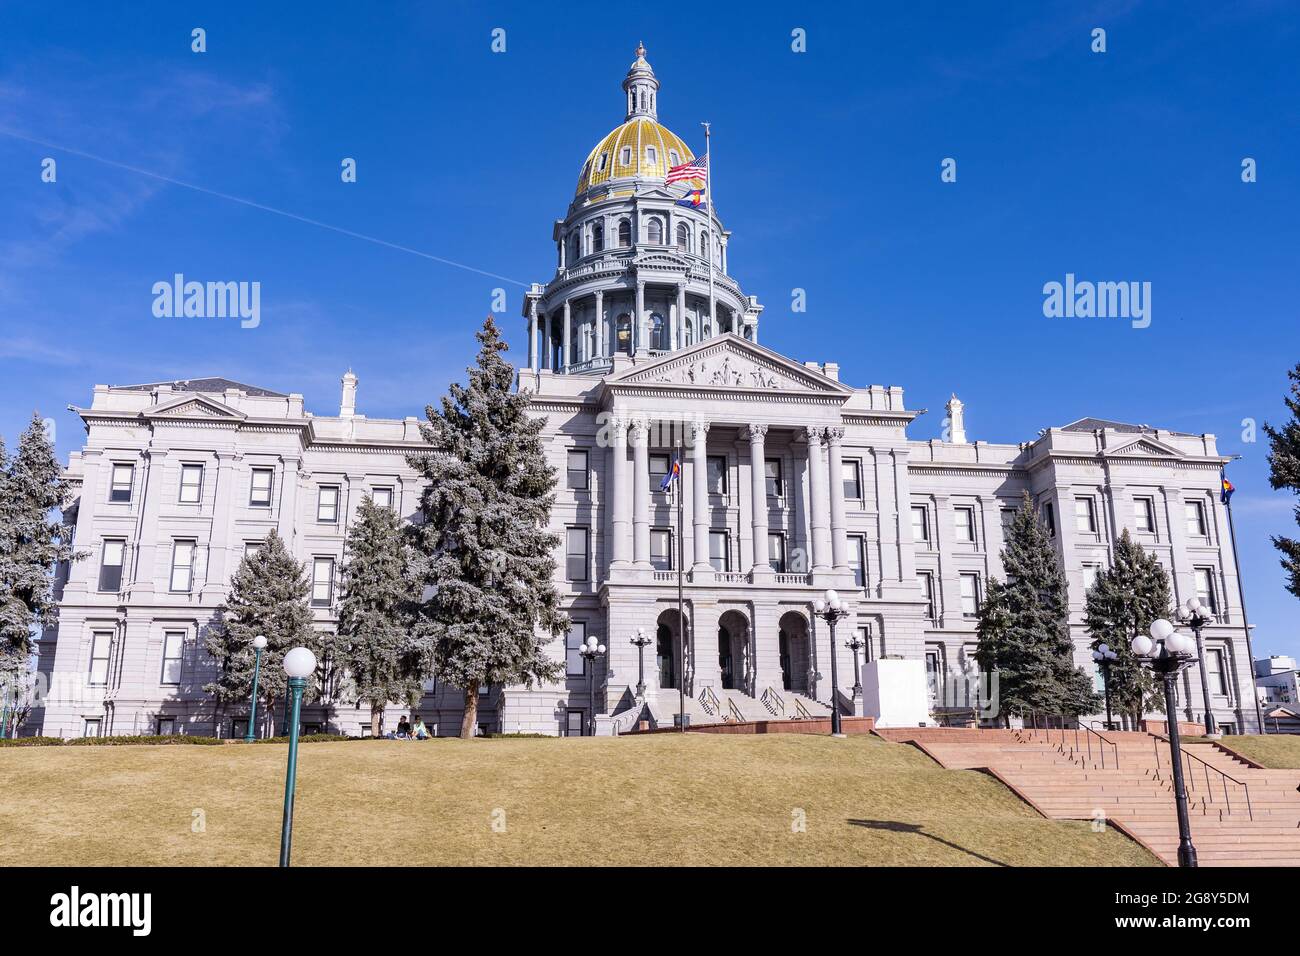 Colorado State Capitol Building in Denver, Colorado Stock Photo